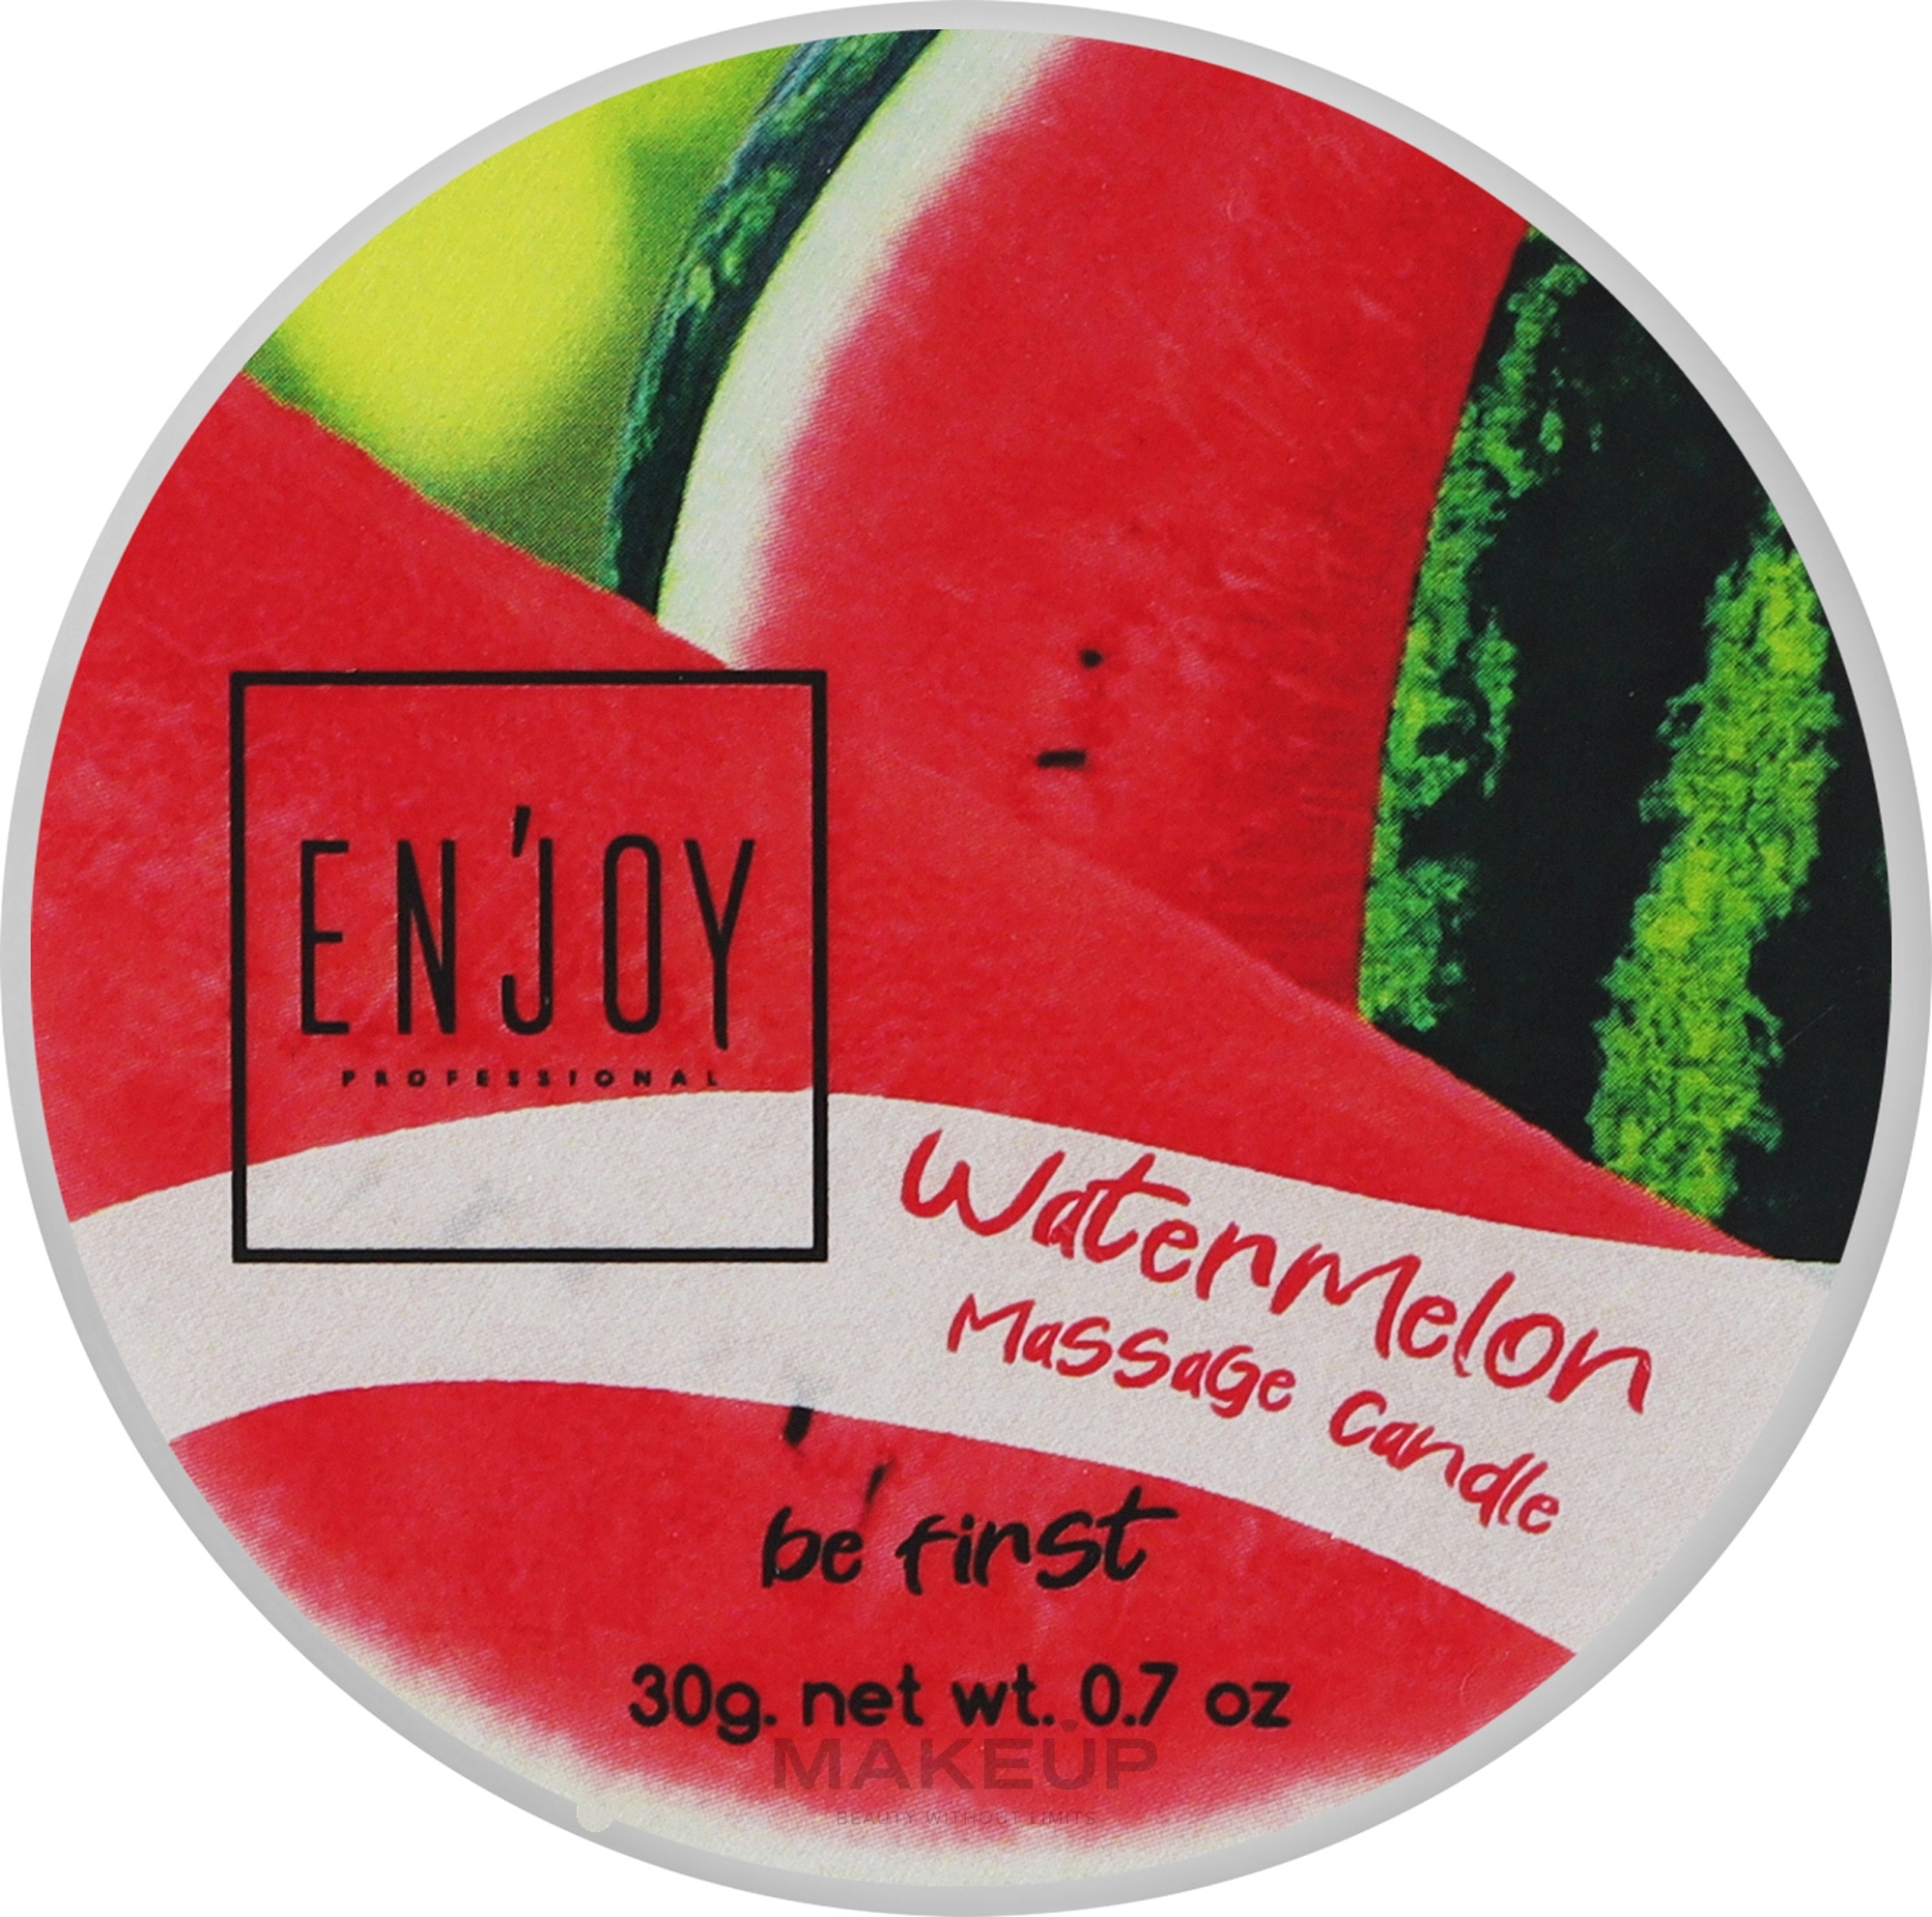 Фруктовая массажная свеча "Арбуз" - Enjoy Professional Be First Massage Candle Watermelon — фото 30g